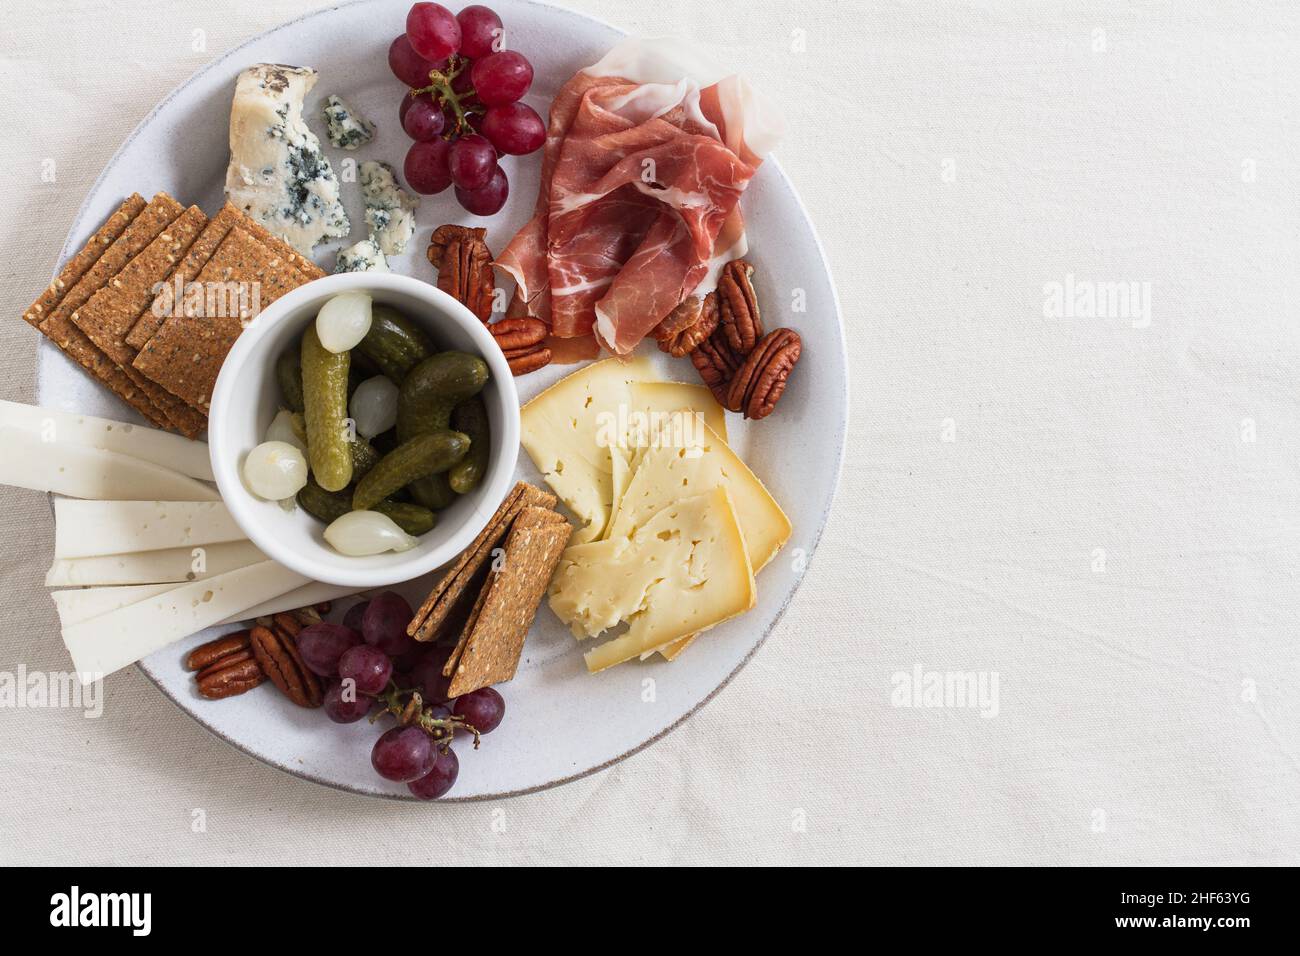 Winterkäseplatte mit einer Auswahl an irischen Käsesorten, Pekannüssen, roten Trauben, Schinken, eingelegten Cornichons und Perlzwiebeln. Stockfoto